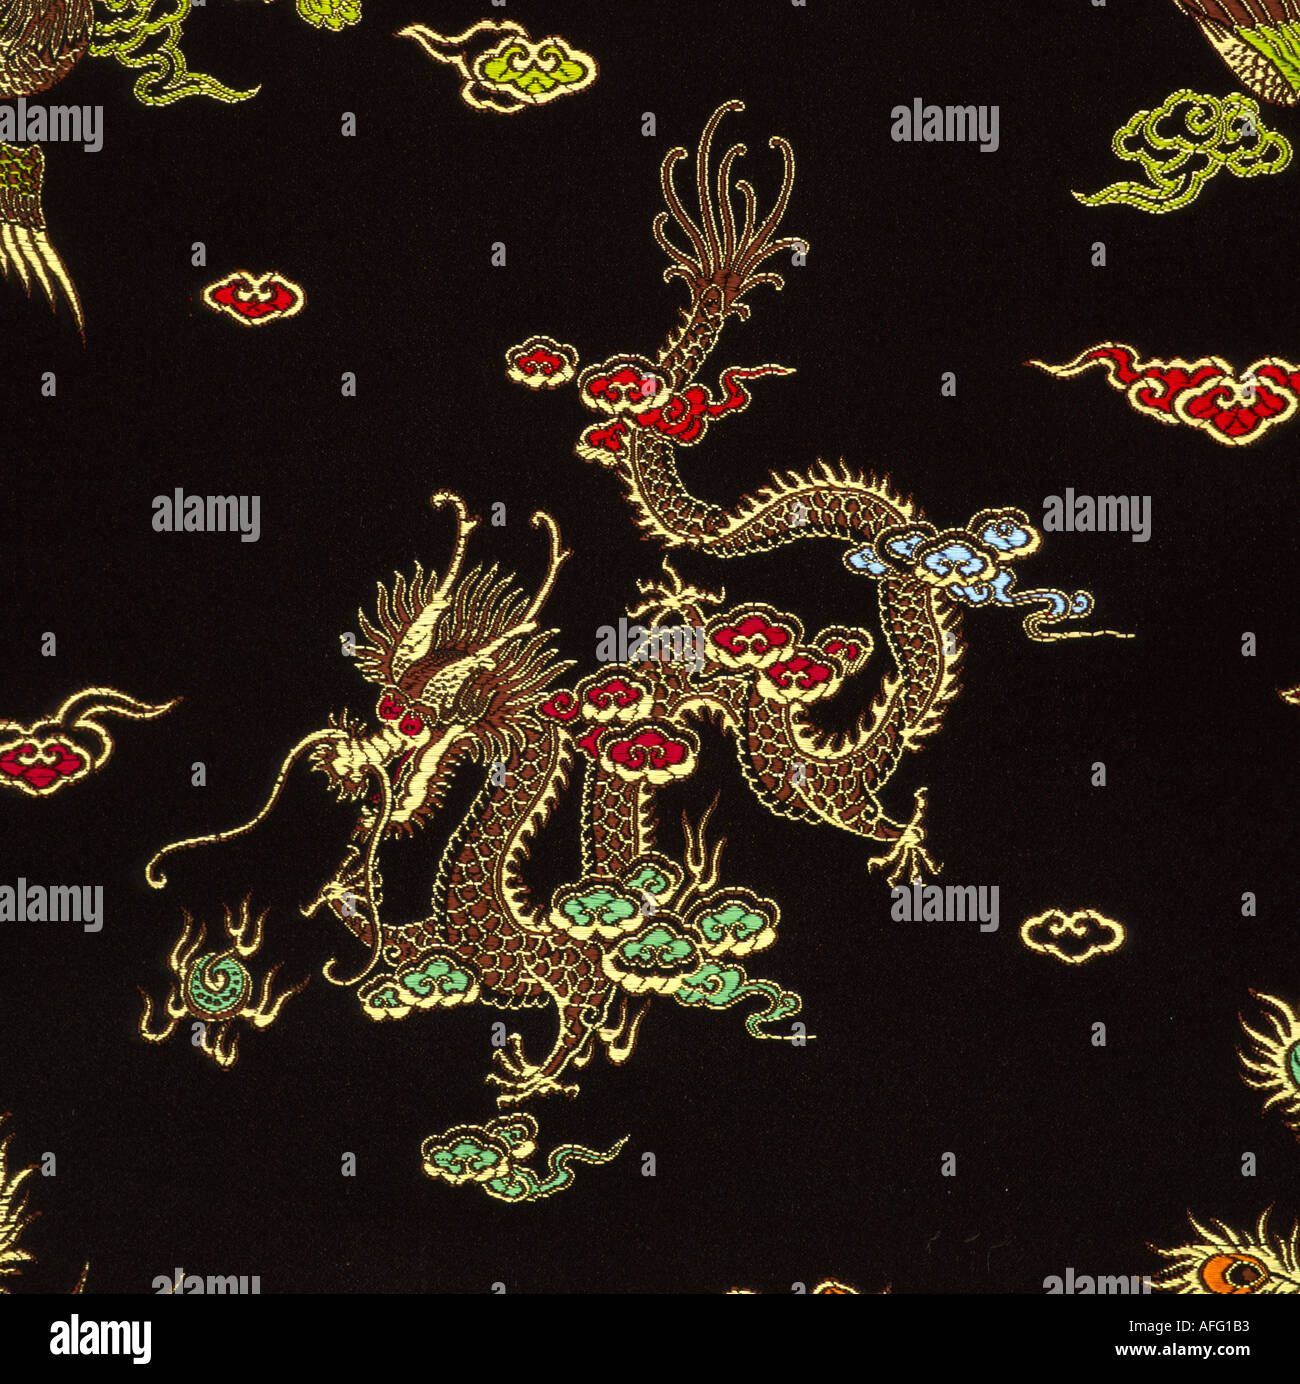 Black silk textile with dragon motif Stock Photo